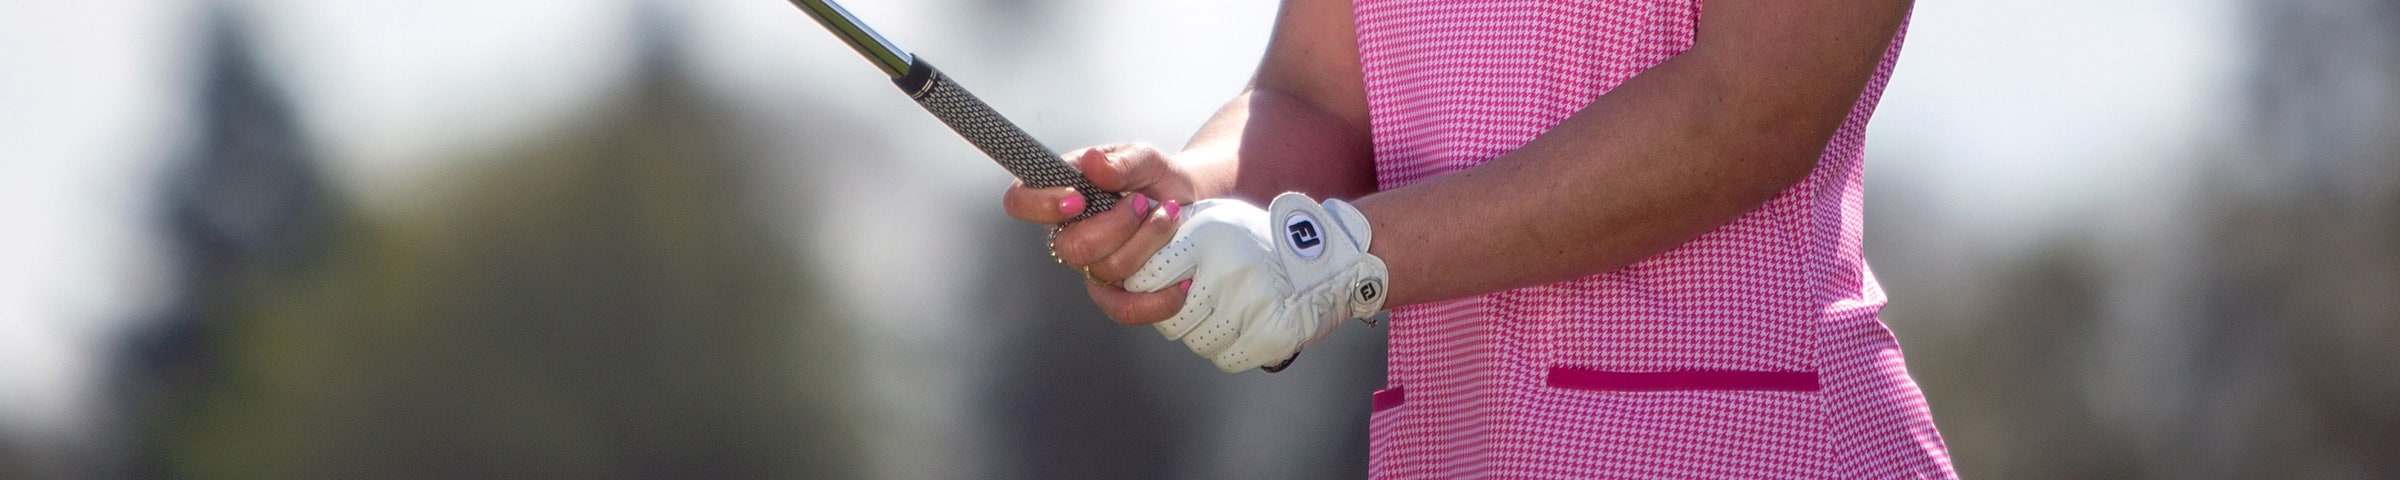 FootJoy Women's Golf Gloves